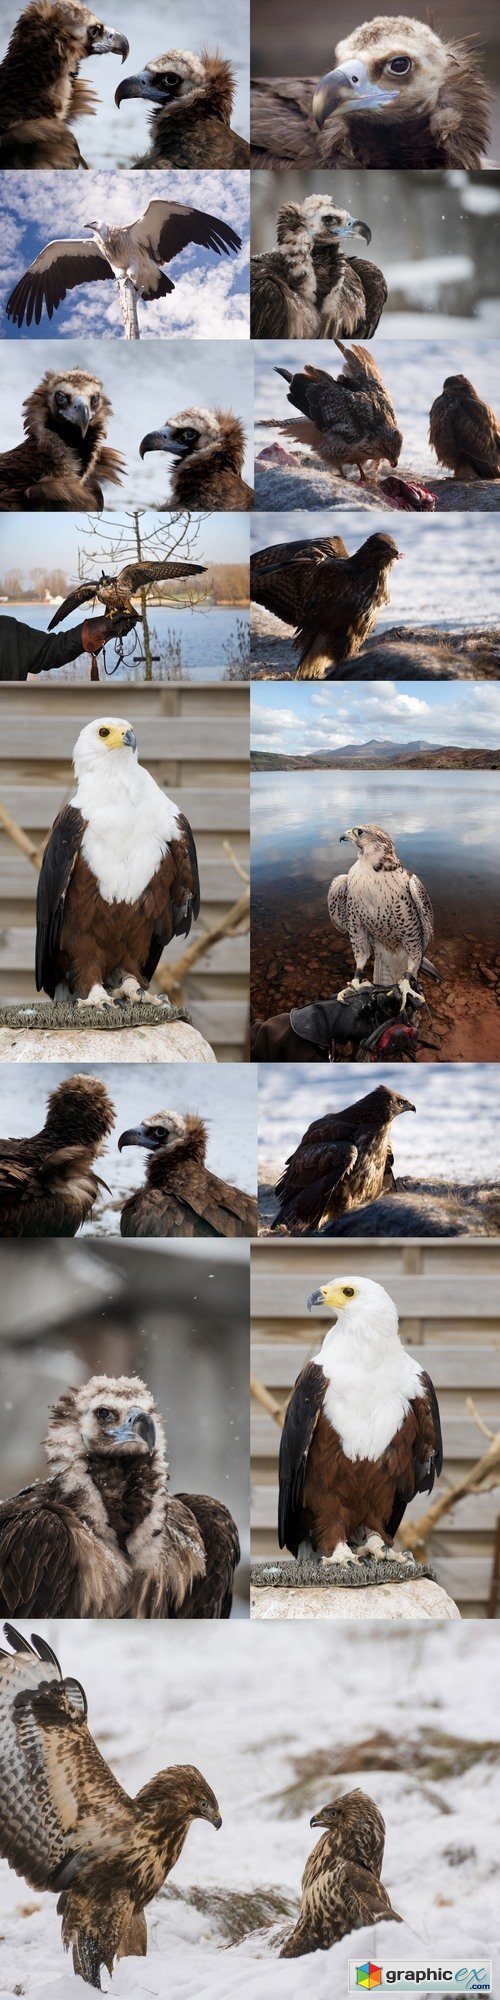 Cinereous Vulture - European Black Vulture